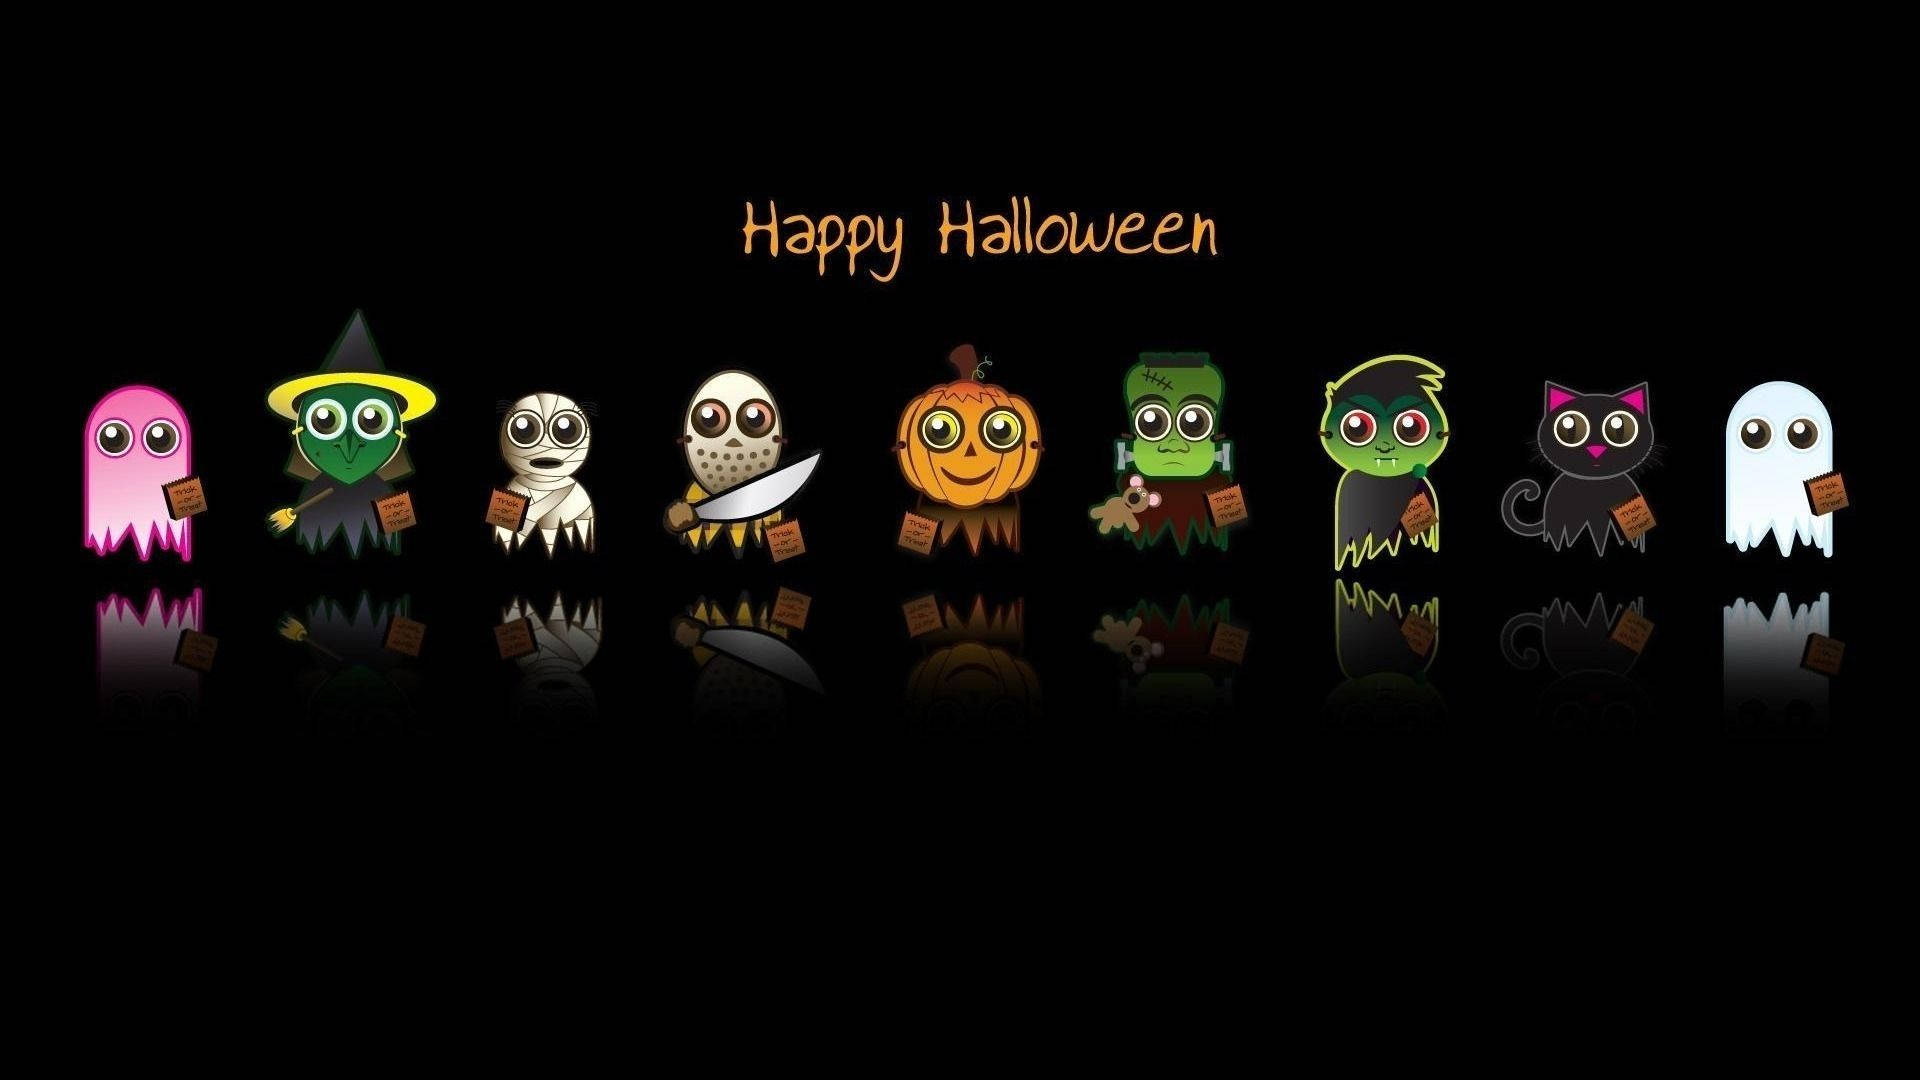 Cartoon Halloween Characters In The Dark Wallpaper